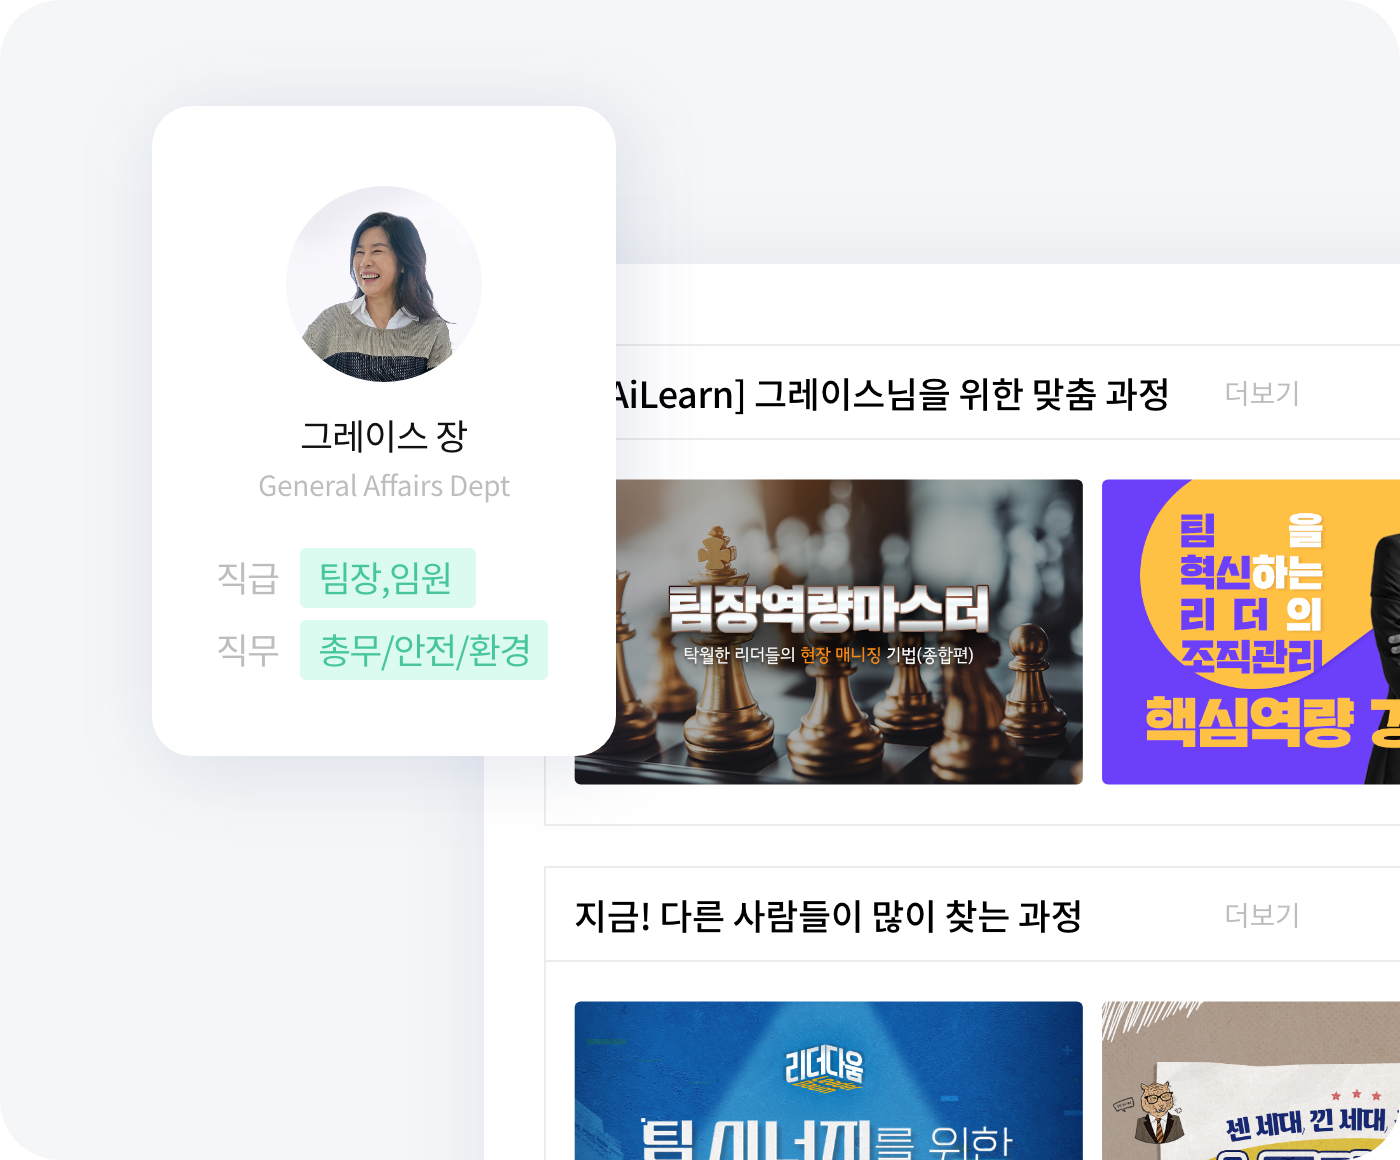 유밥 AiLearn, 직무교육 학습 콘텐츠 큐레이션